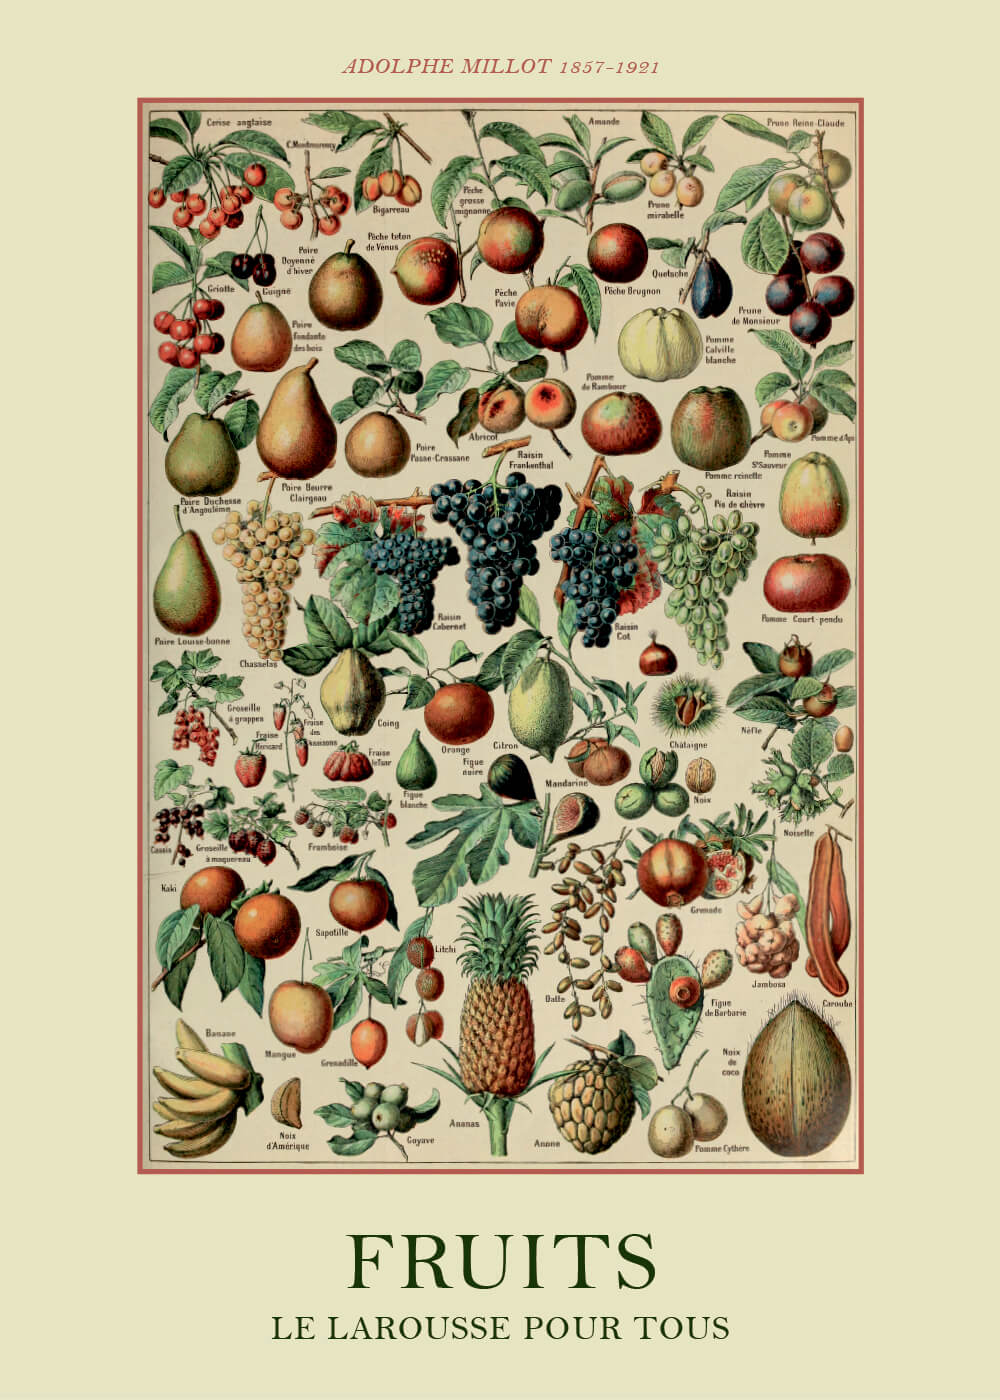 Billede af Fruits - Adolphe Millot vintage leksikon plakat